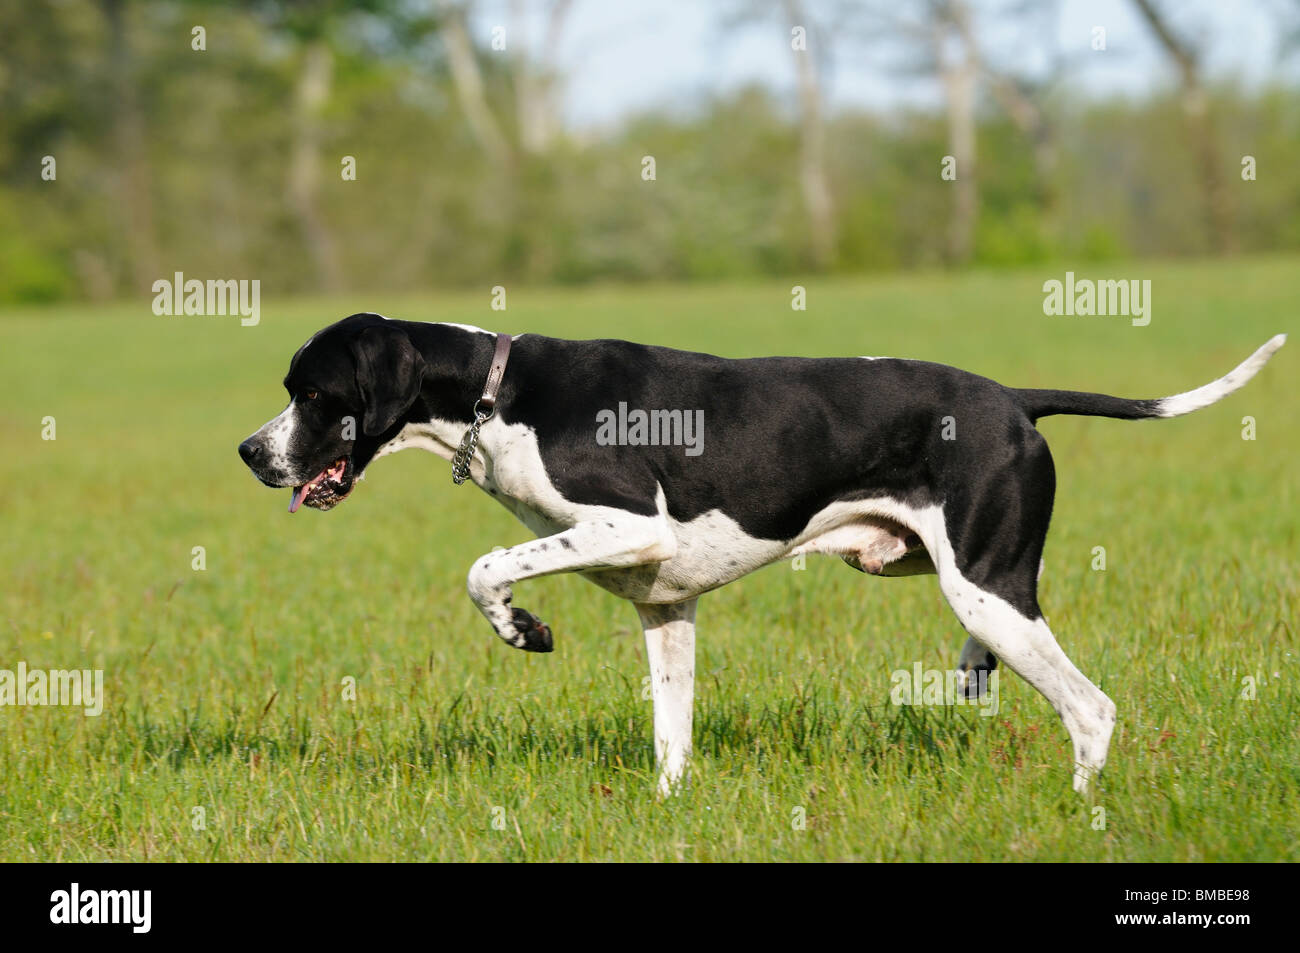 Stock photo of an english Pointer gun dog on point. Stock Photo